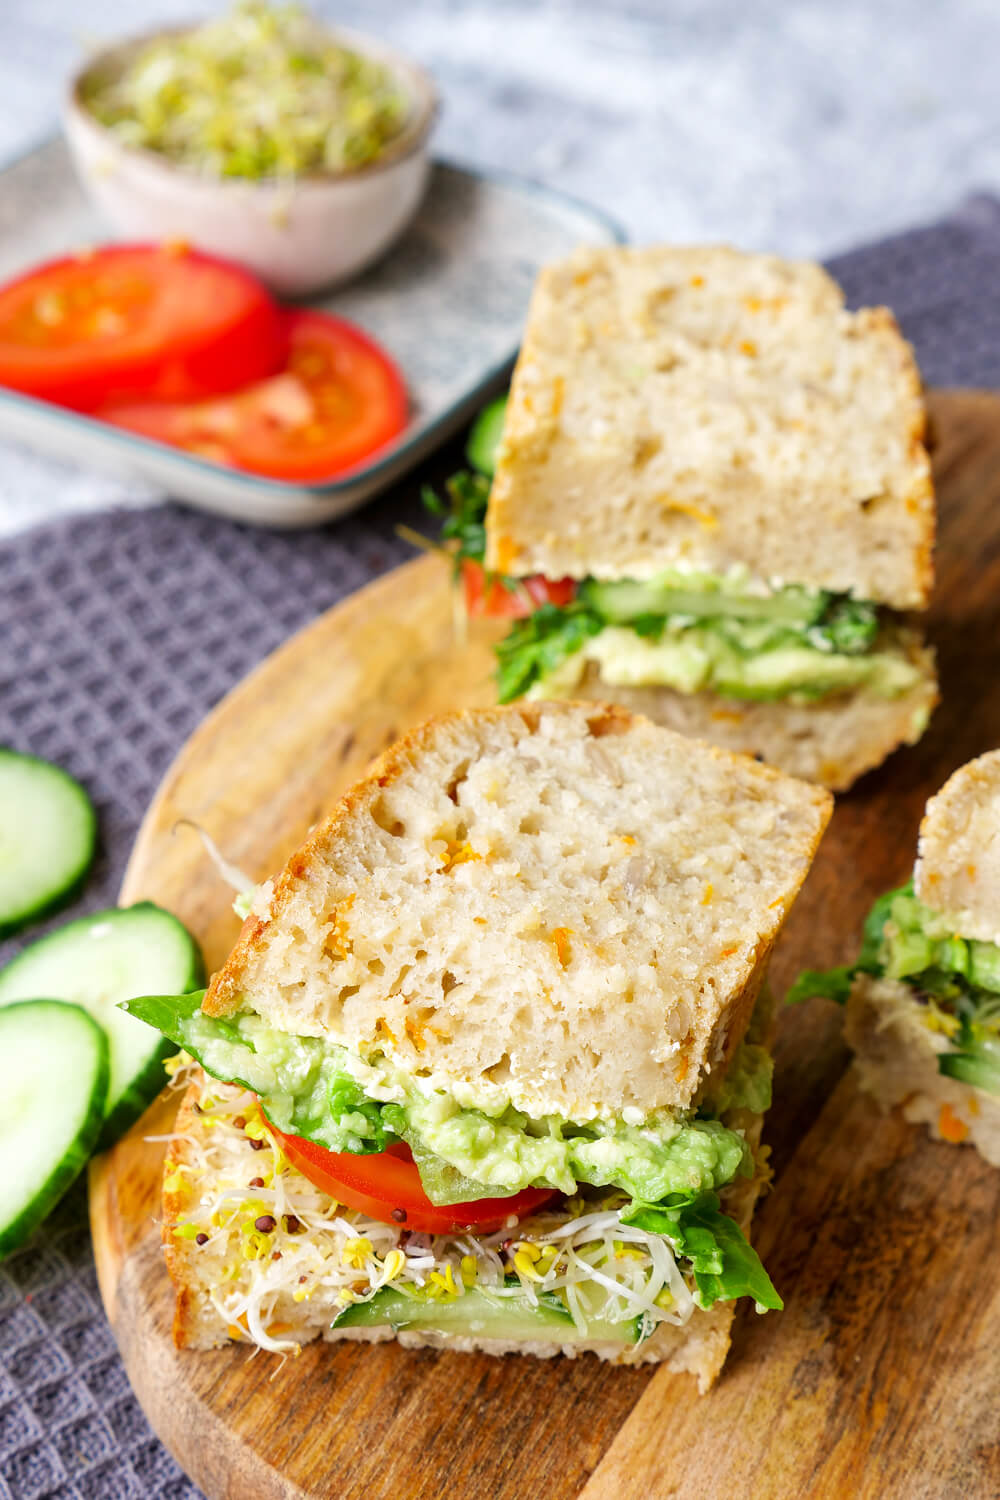 Die gesunde Stulle für die Mittagspause - mein Green Sandwich mit Avocado, Sprossen, Tomaten, Gurken und Salat